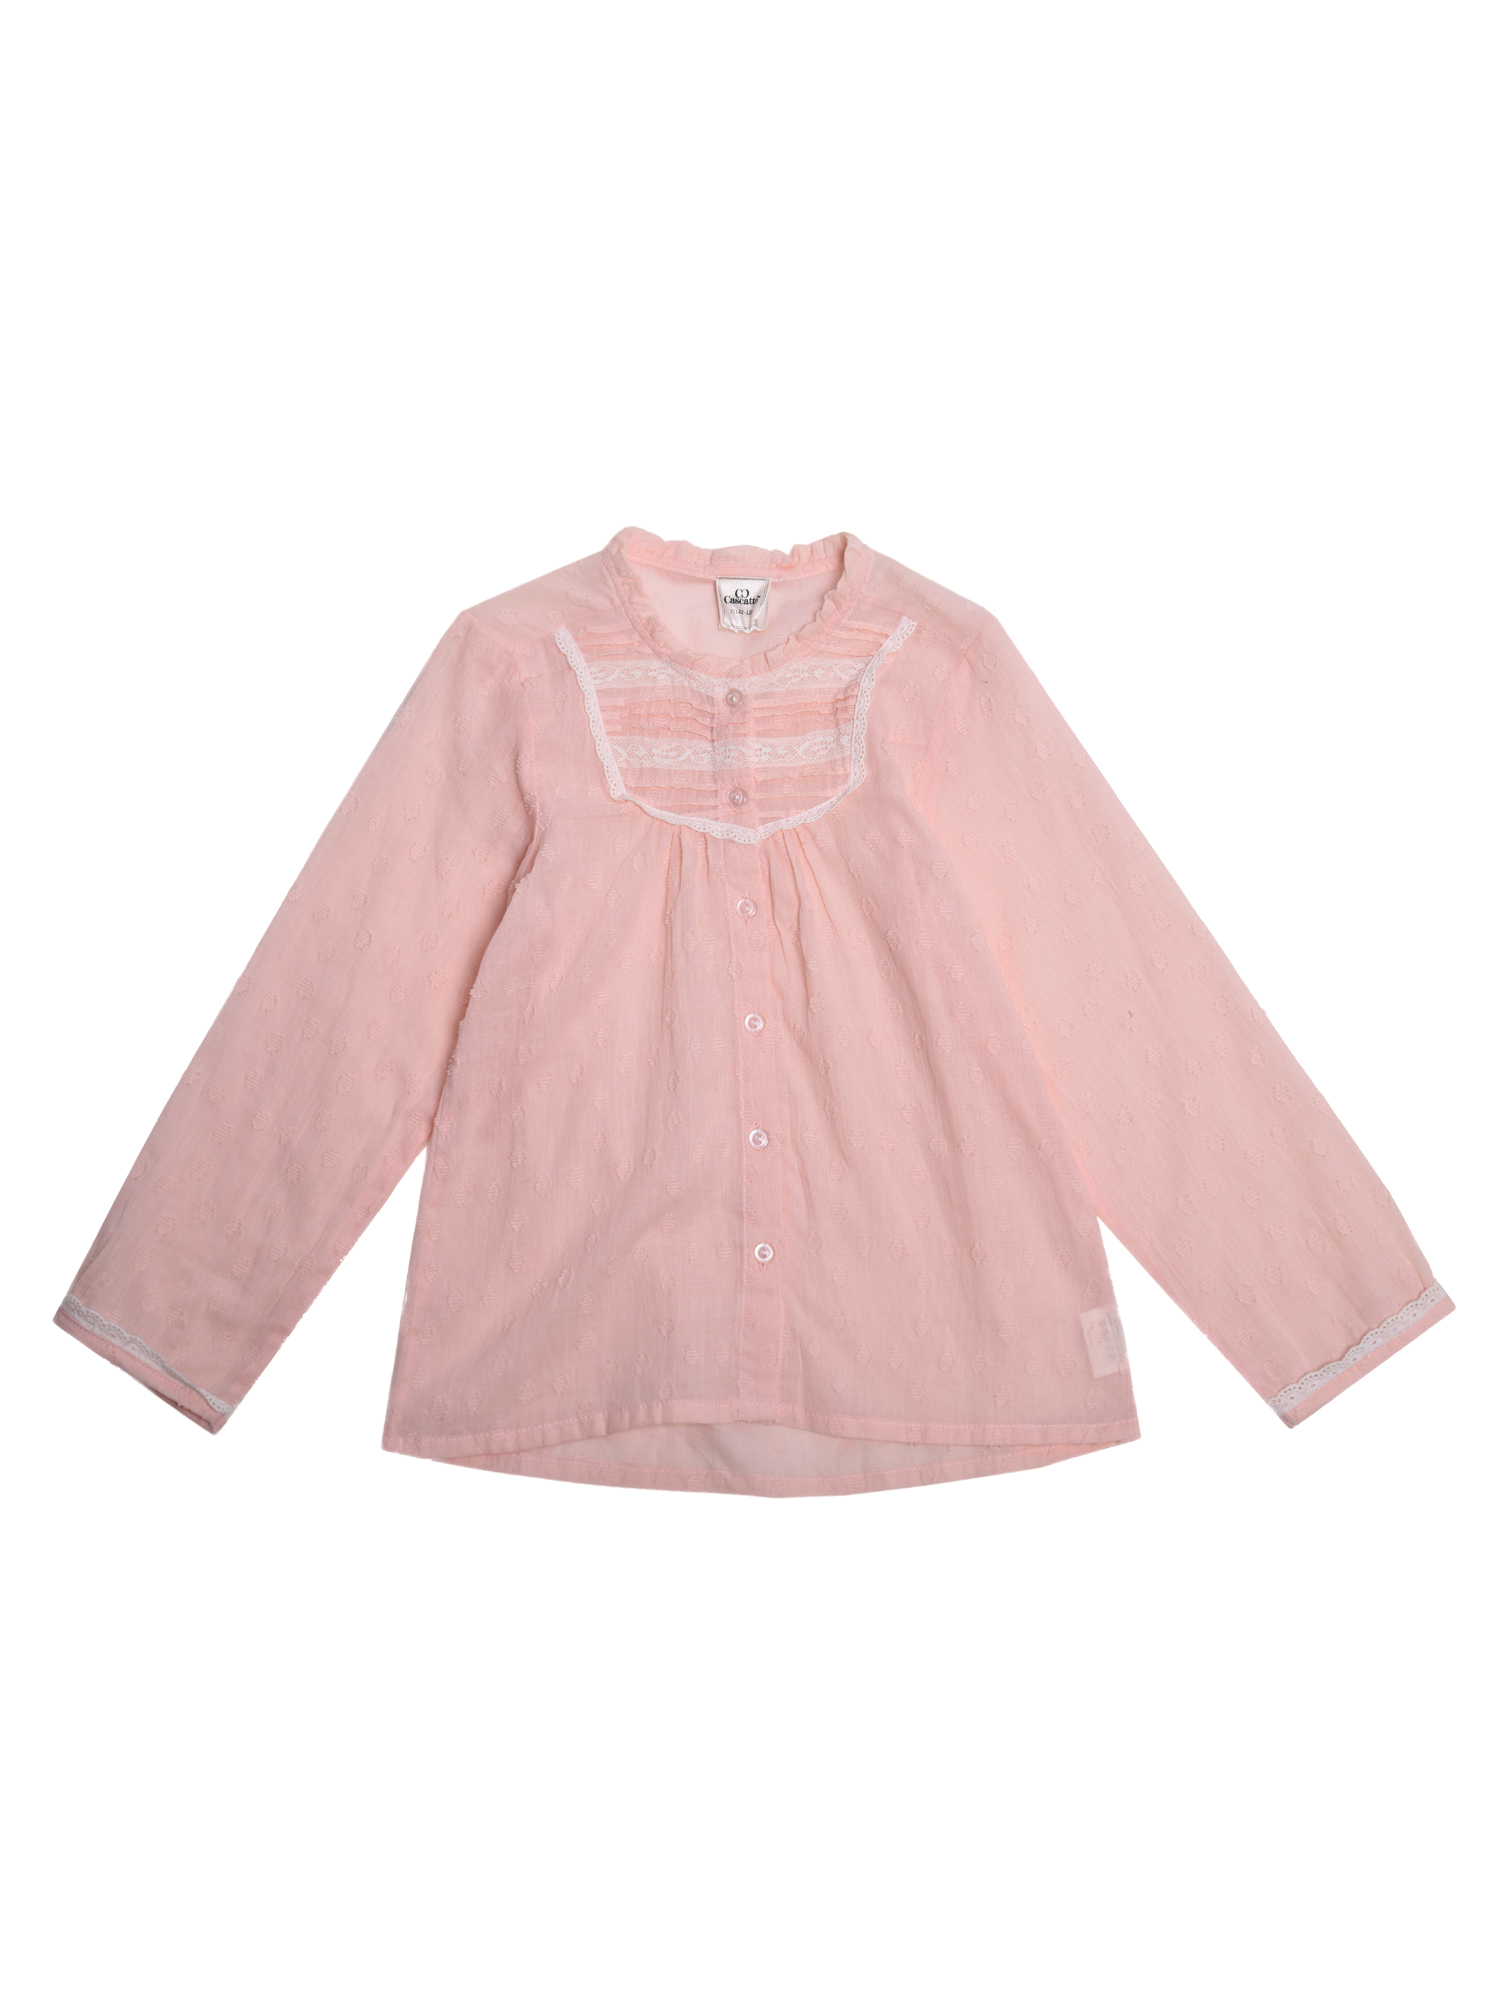 Купить Рубашка для девочки RDD007 розовый